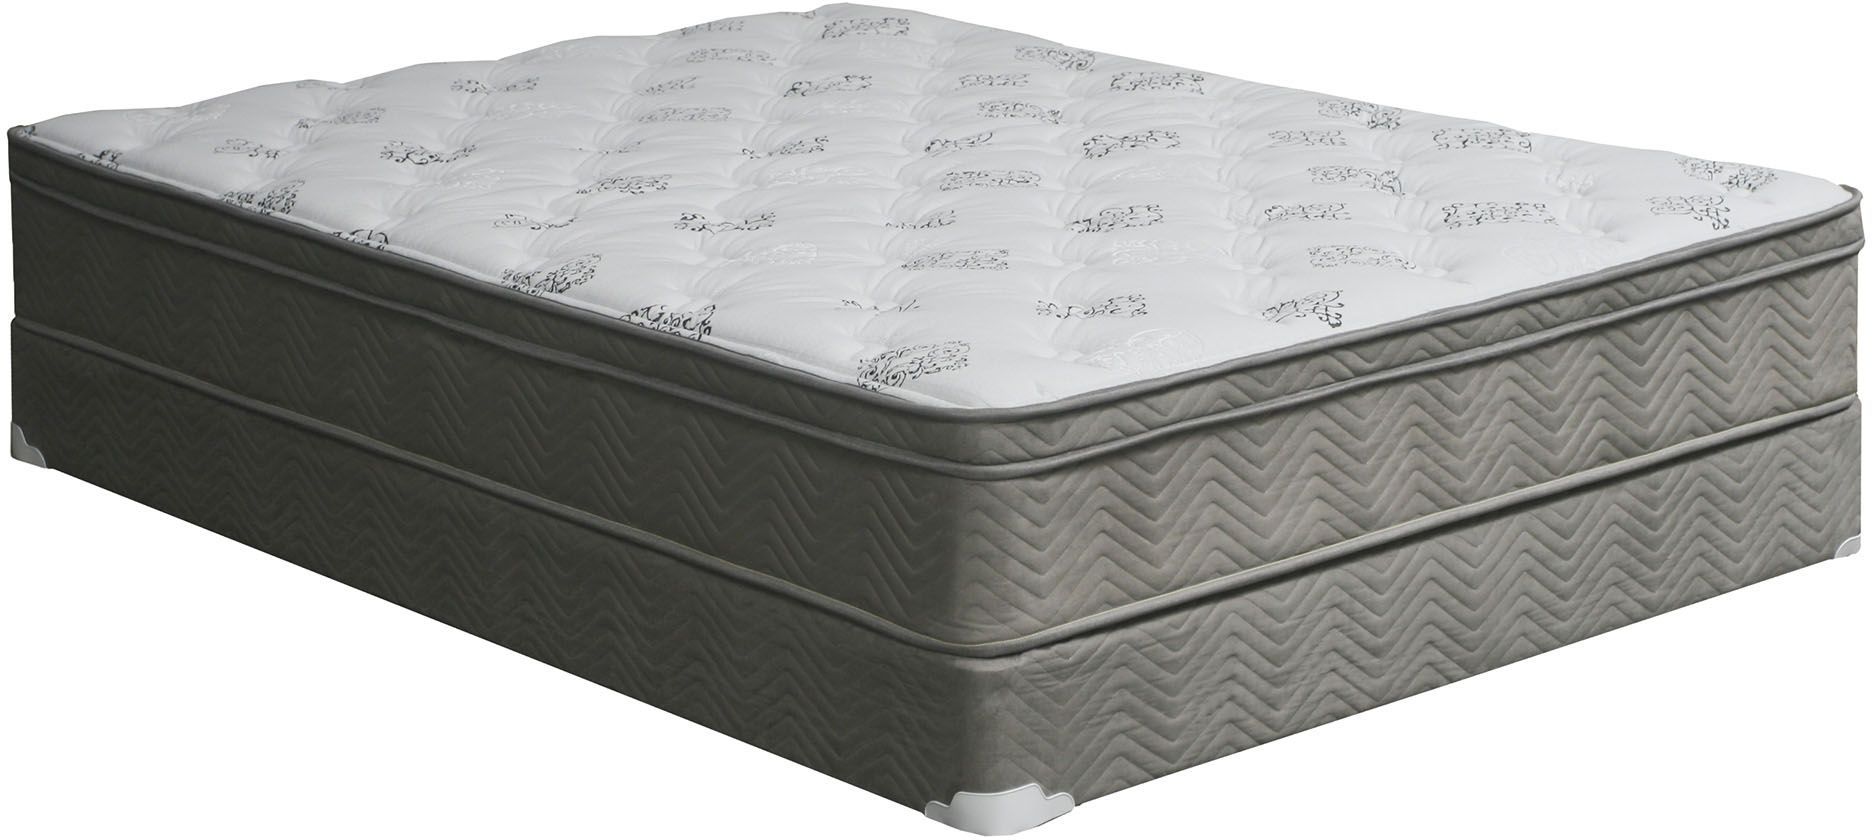 august euro queen mattress